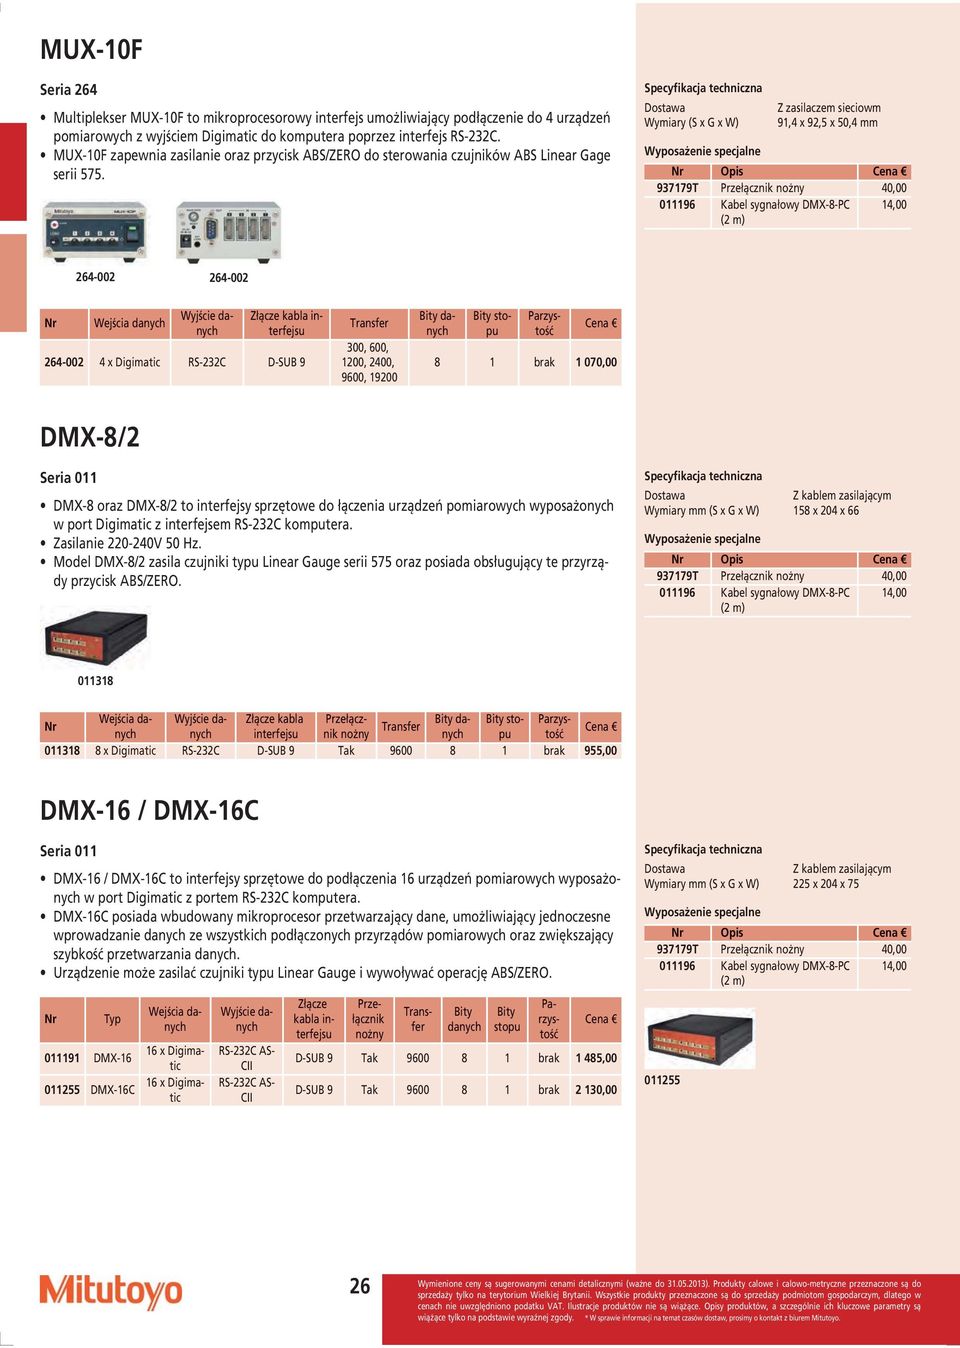 Dostawa Wymiary (S x G x W) Z zasilaczem sieciowm 91,4 x 92,5 x 50,4 mm 011196 Kabel sygnałowy DMX-8-PC (2 m) 14,00 264-002 264-002 Wejścia danych Wyjście danych Złącze kabla interfejsu 264-002 4 x